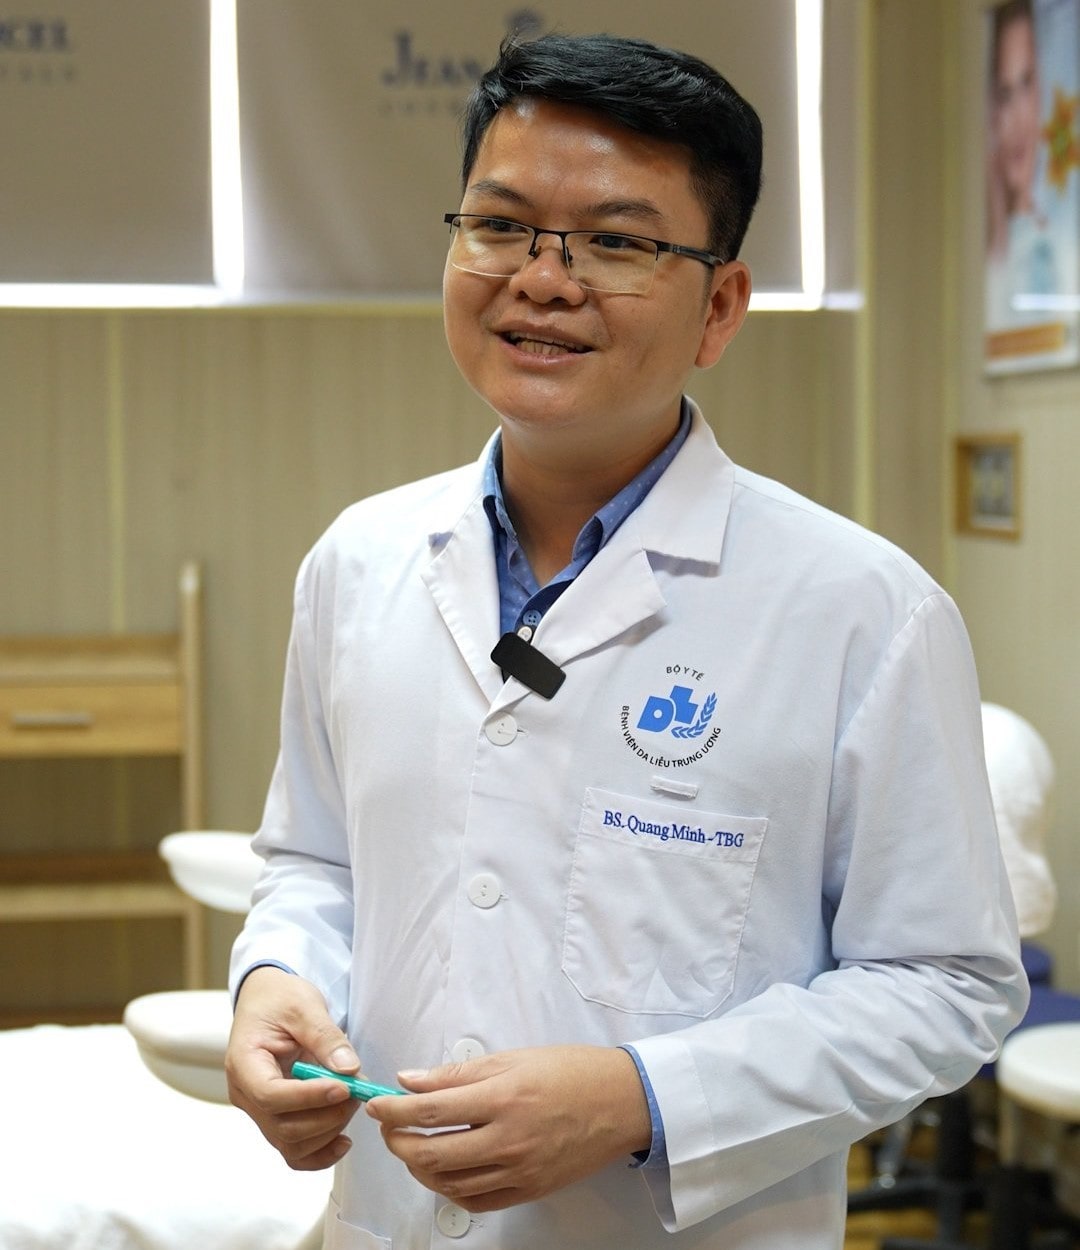 Thạc sĩ, bác sĩ chuyên khoa II Nguyễn Quang Minh, Phó trưởng khoa Nghiên cứu và ứng dụng công nghệ tế bào gốc, Bệnh viện Da liễu Trung ương. Ảnh: Thanh Hà.